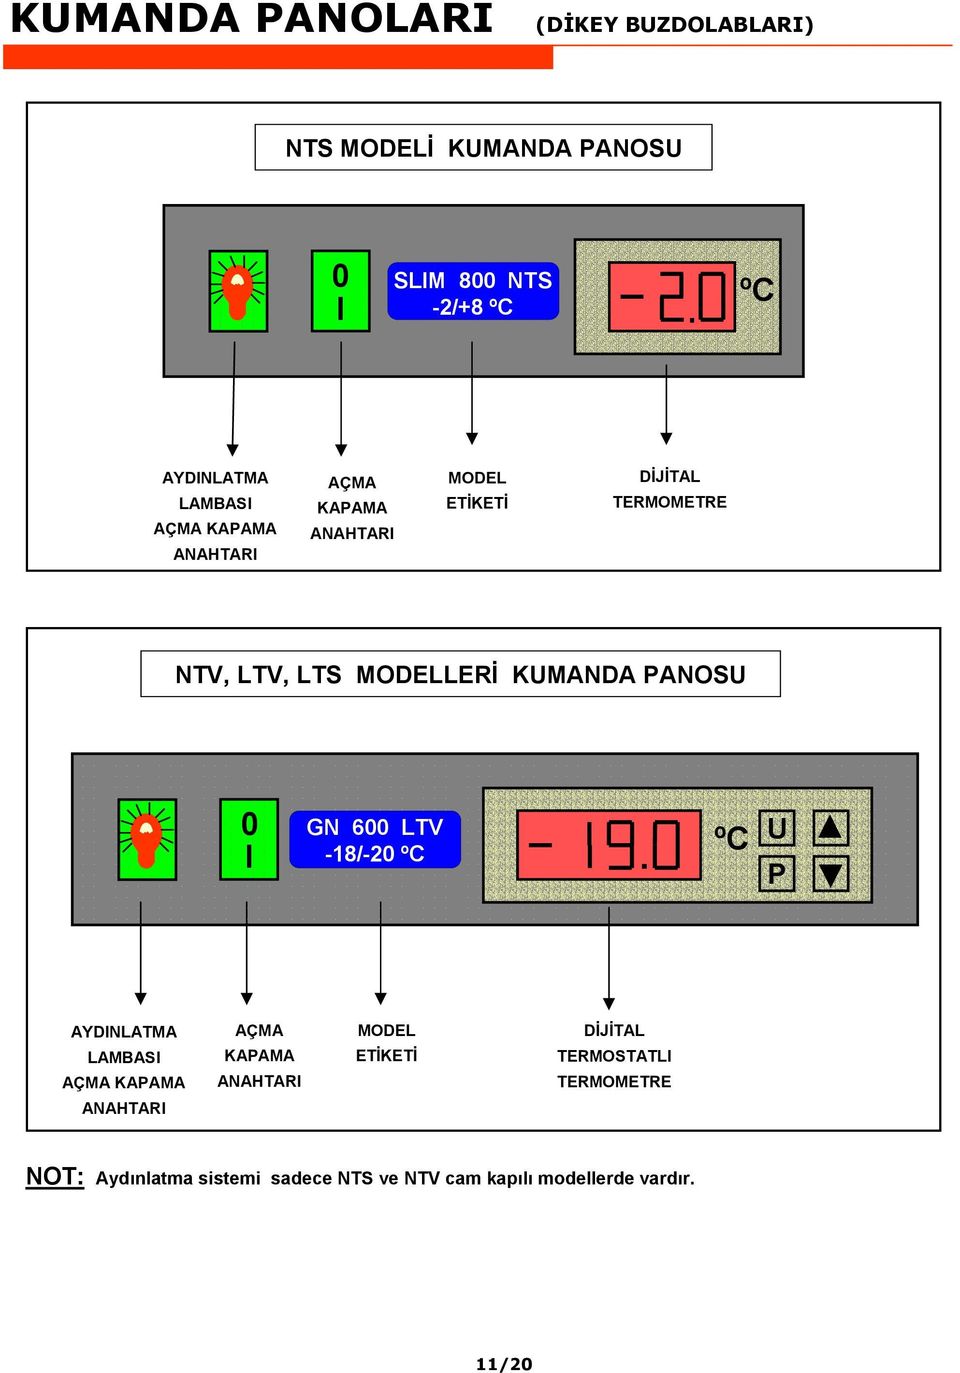 KUMANDA PANOSU 0 GN 600 LTV I -18/-20 ºC.